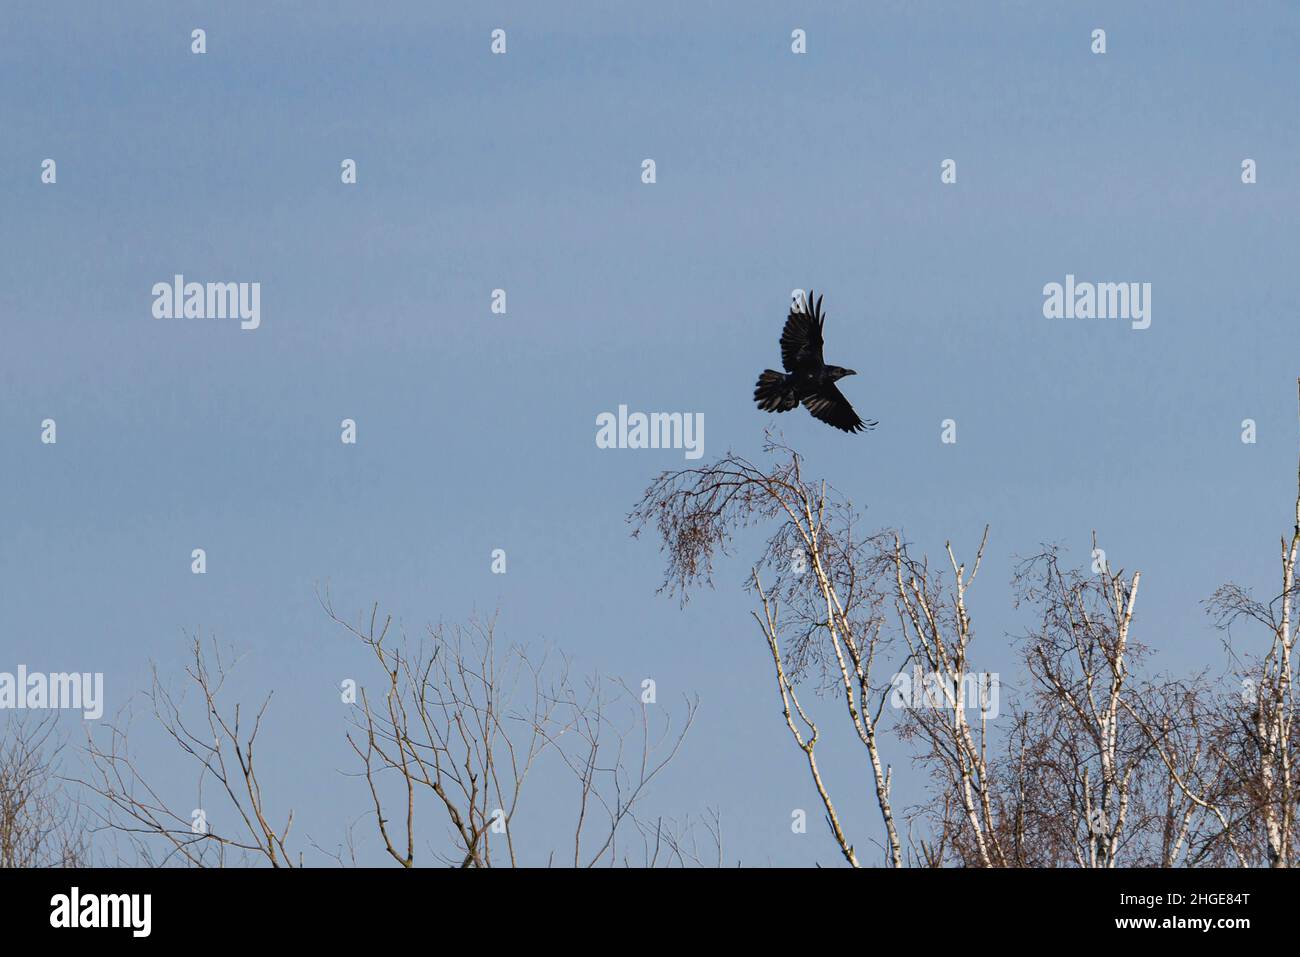 Cielos azules sin nubes. Es invierno, las ramas de los árboles están desprovistas de hojas. Se puede ver un cuervo volando sobre las copas de los árboles. Foto de stock